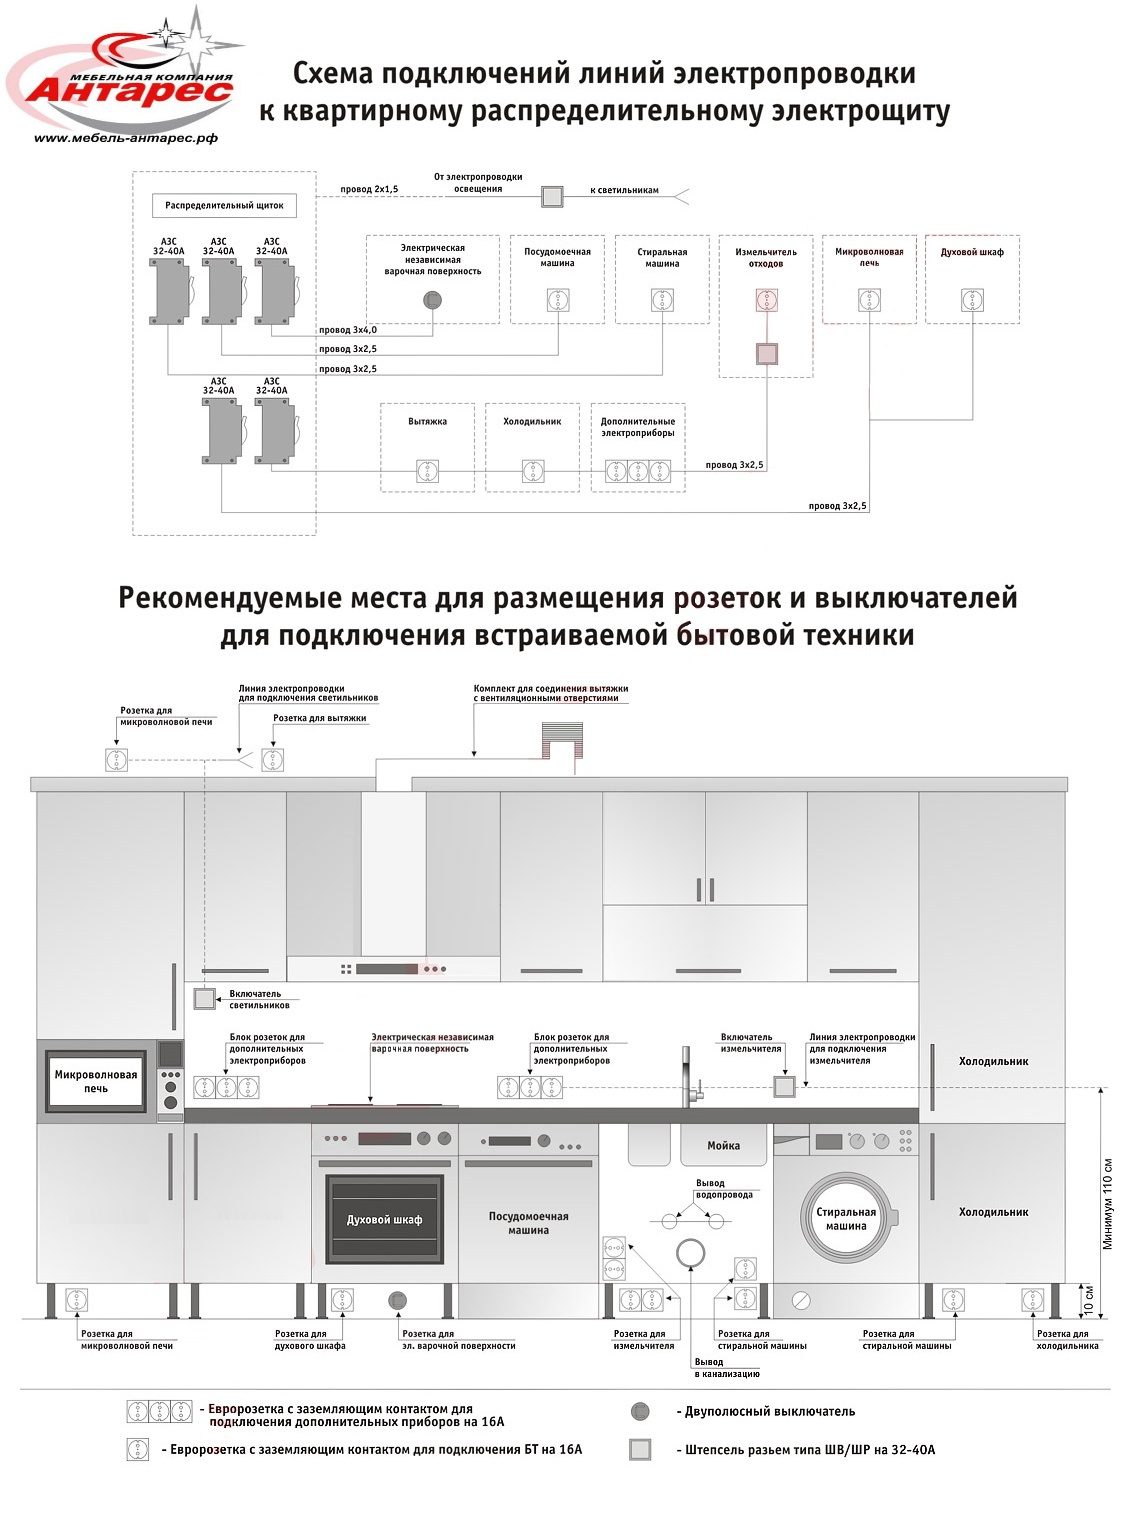 Схема кухонной электропроводки для подключения бытовой техники